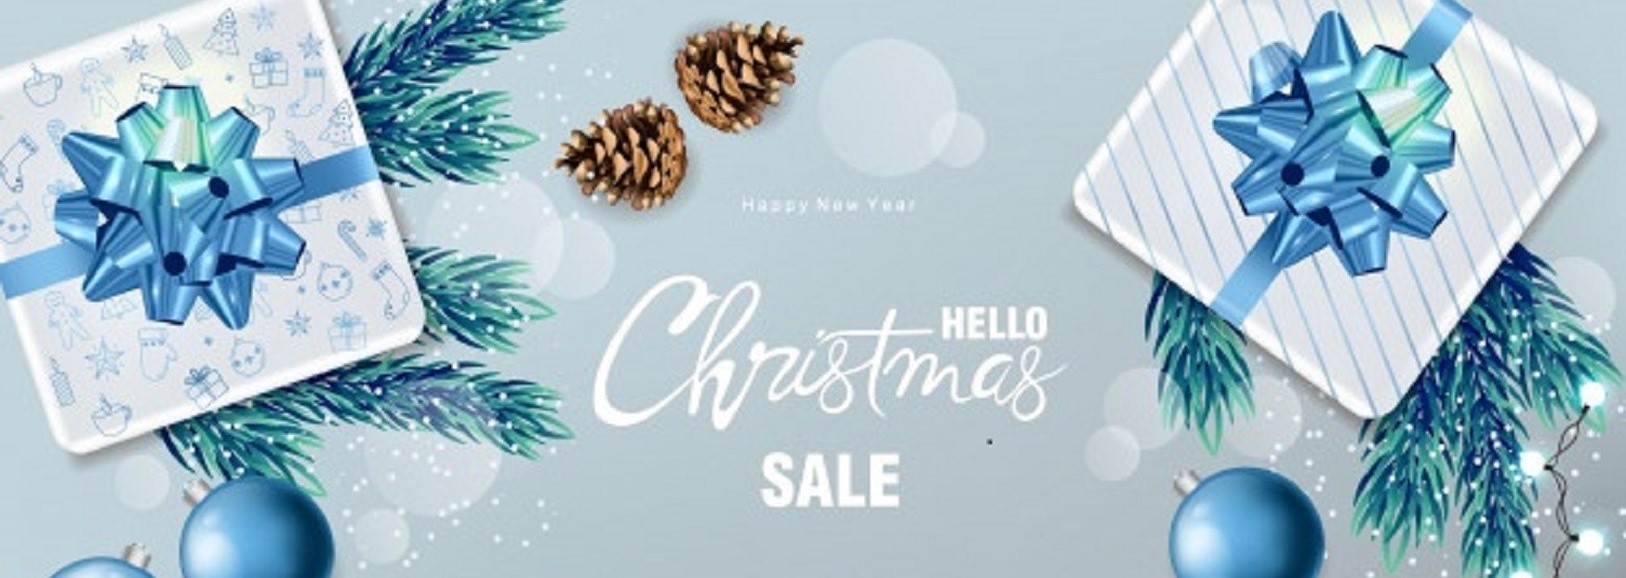 christmas-sale-banner-2